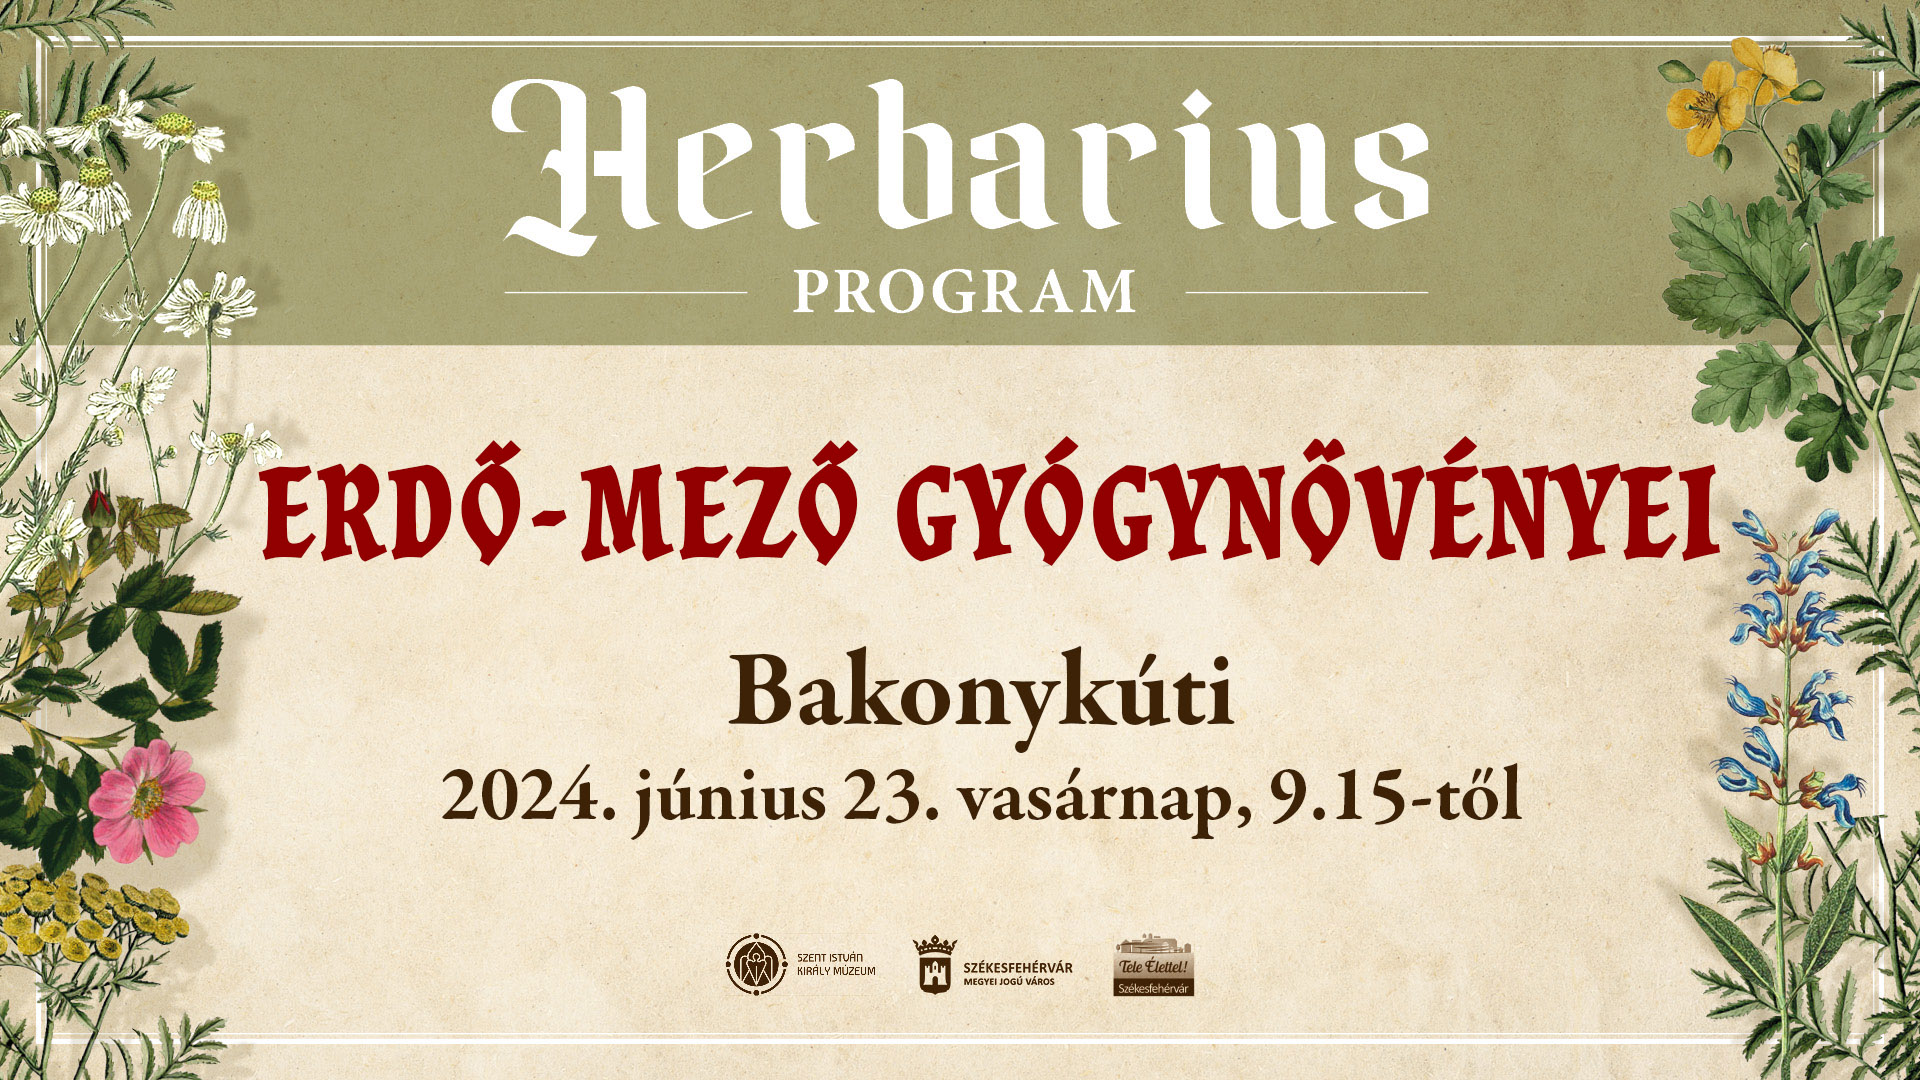 Erdő-mező gyógynövényei - Herbarius túra lesz vasárnap